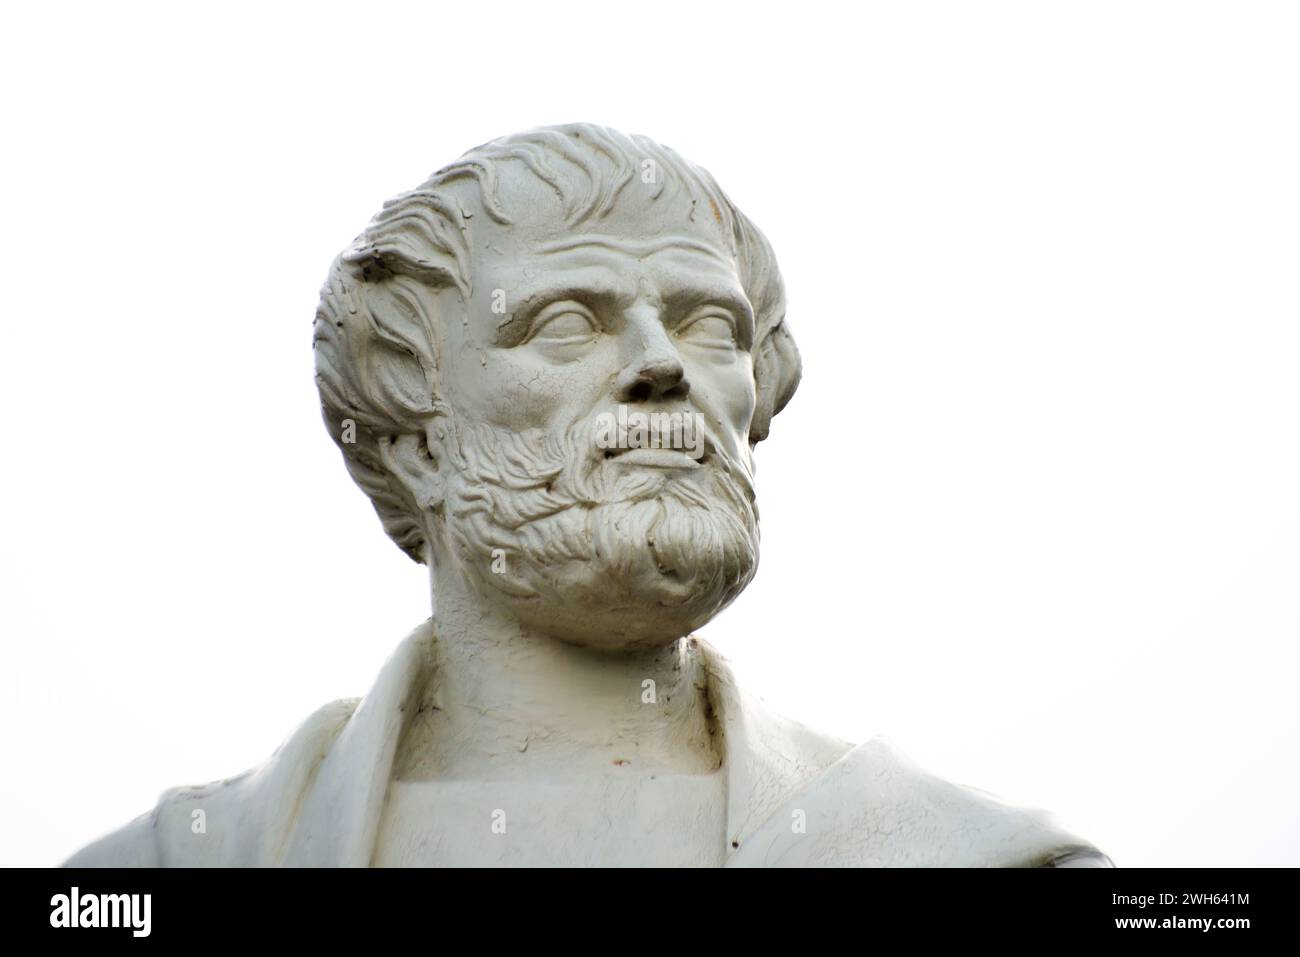 Eine fesselnde Nahaufnahme von Aristoteles' plastischem Kopf, einer antiken und künstlerischen Darstellung des verehrten griechischen Philosophen in klassischer Form. Stockfoto